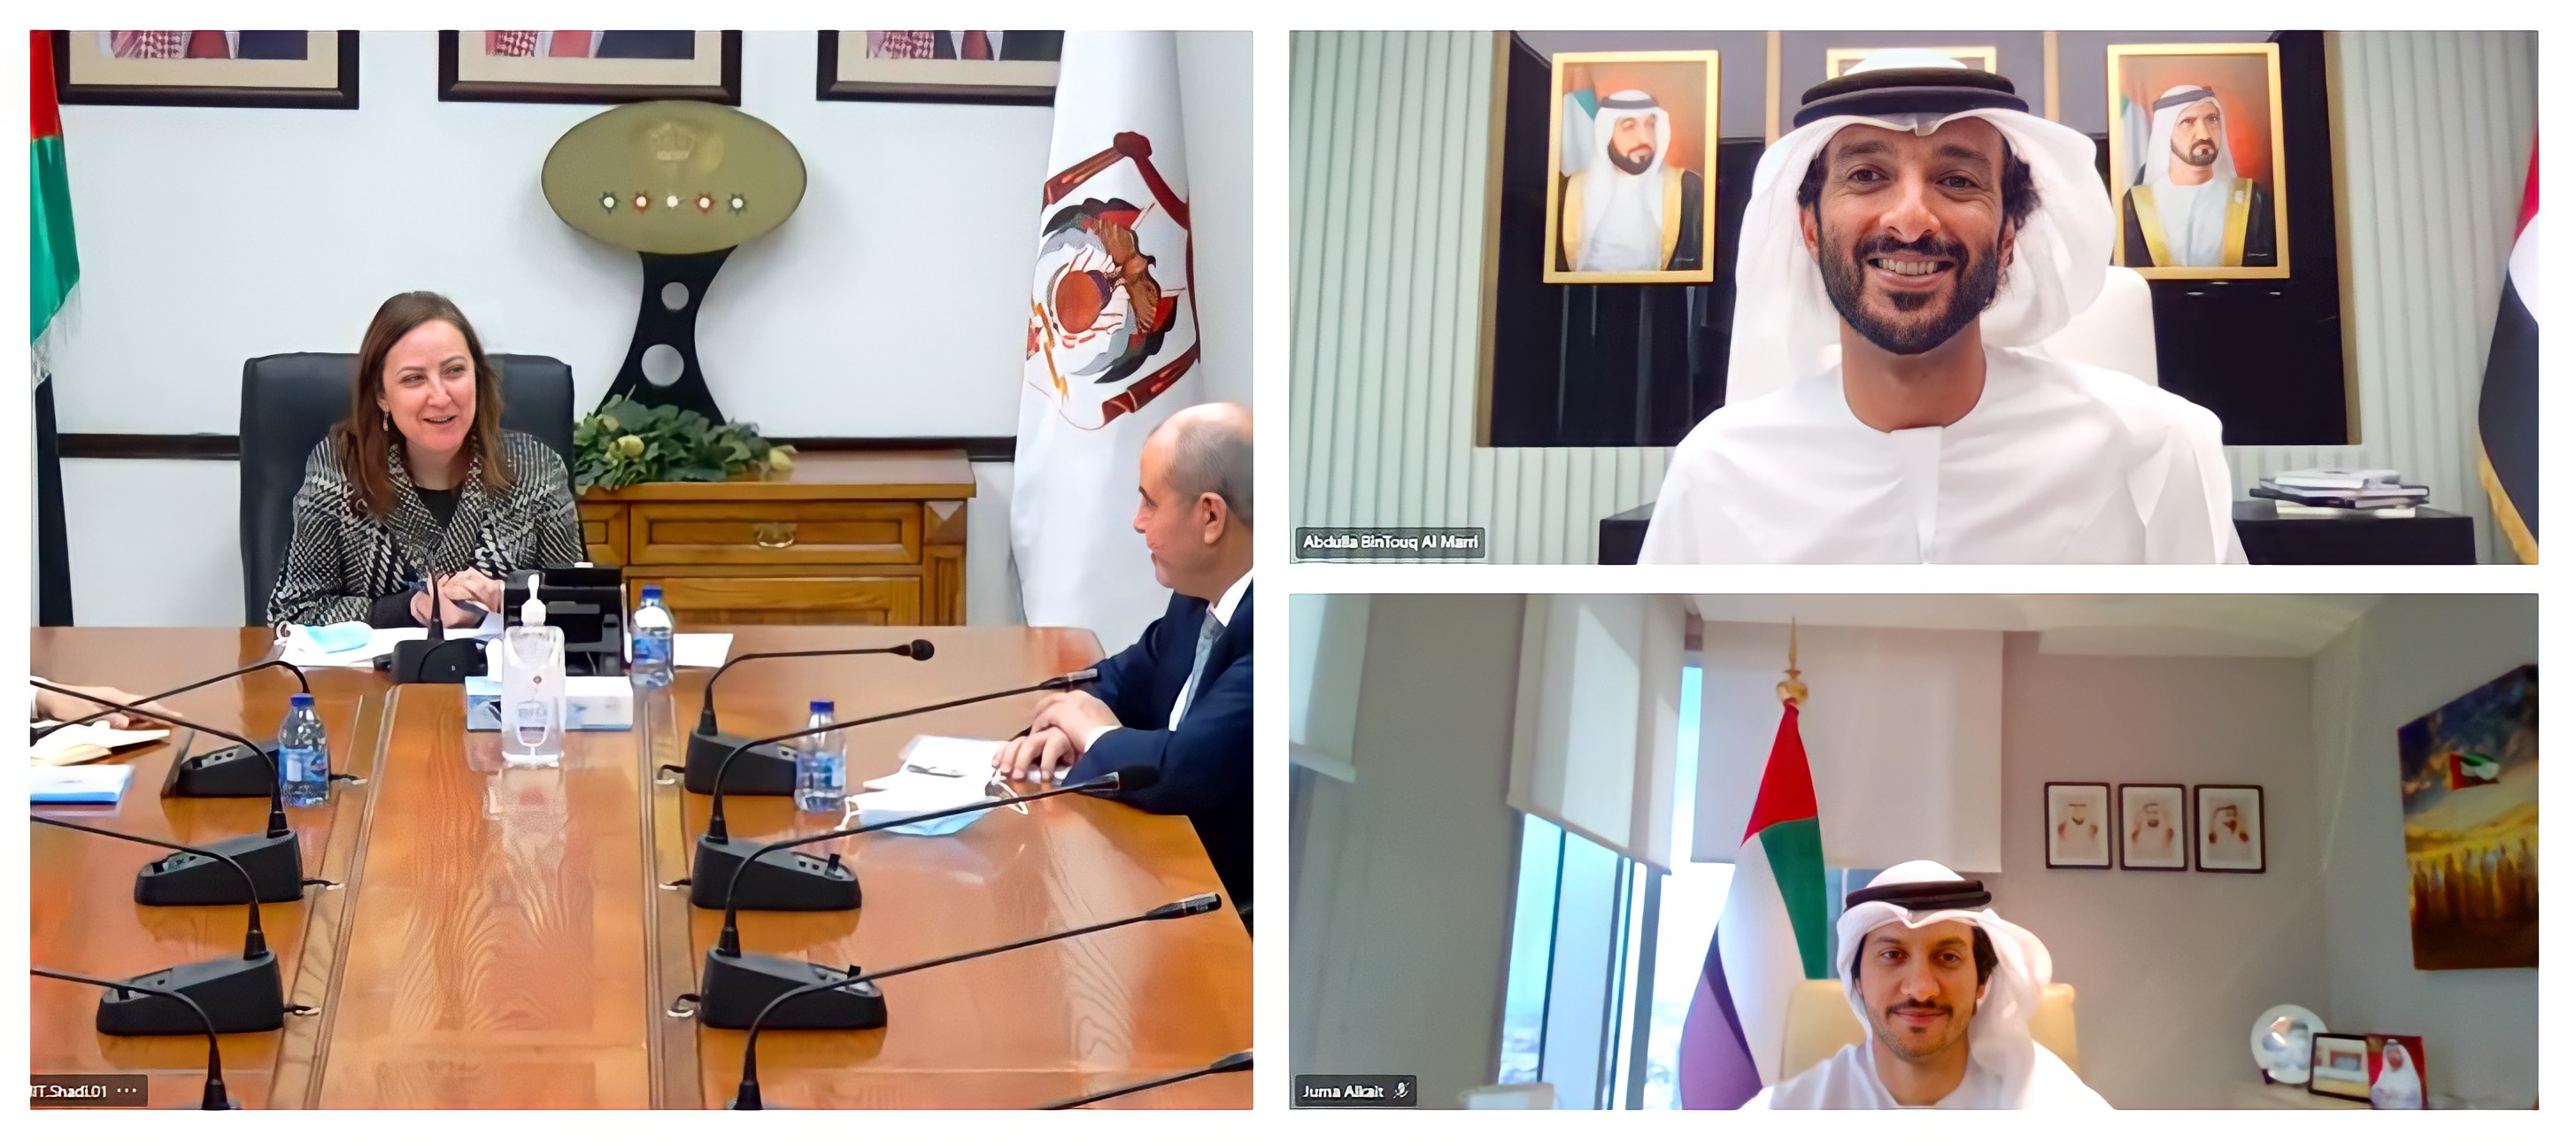 بن طوق يبحث مع وزيرة الصناعة والتجارة الأردنية سبل تنمية التعاون الاقتصادي بين البلدين إلى مستويات جديدة